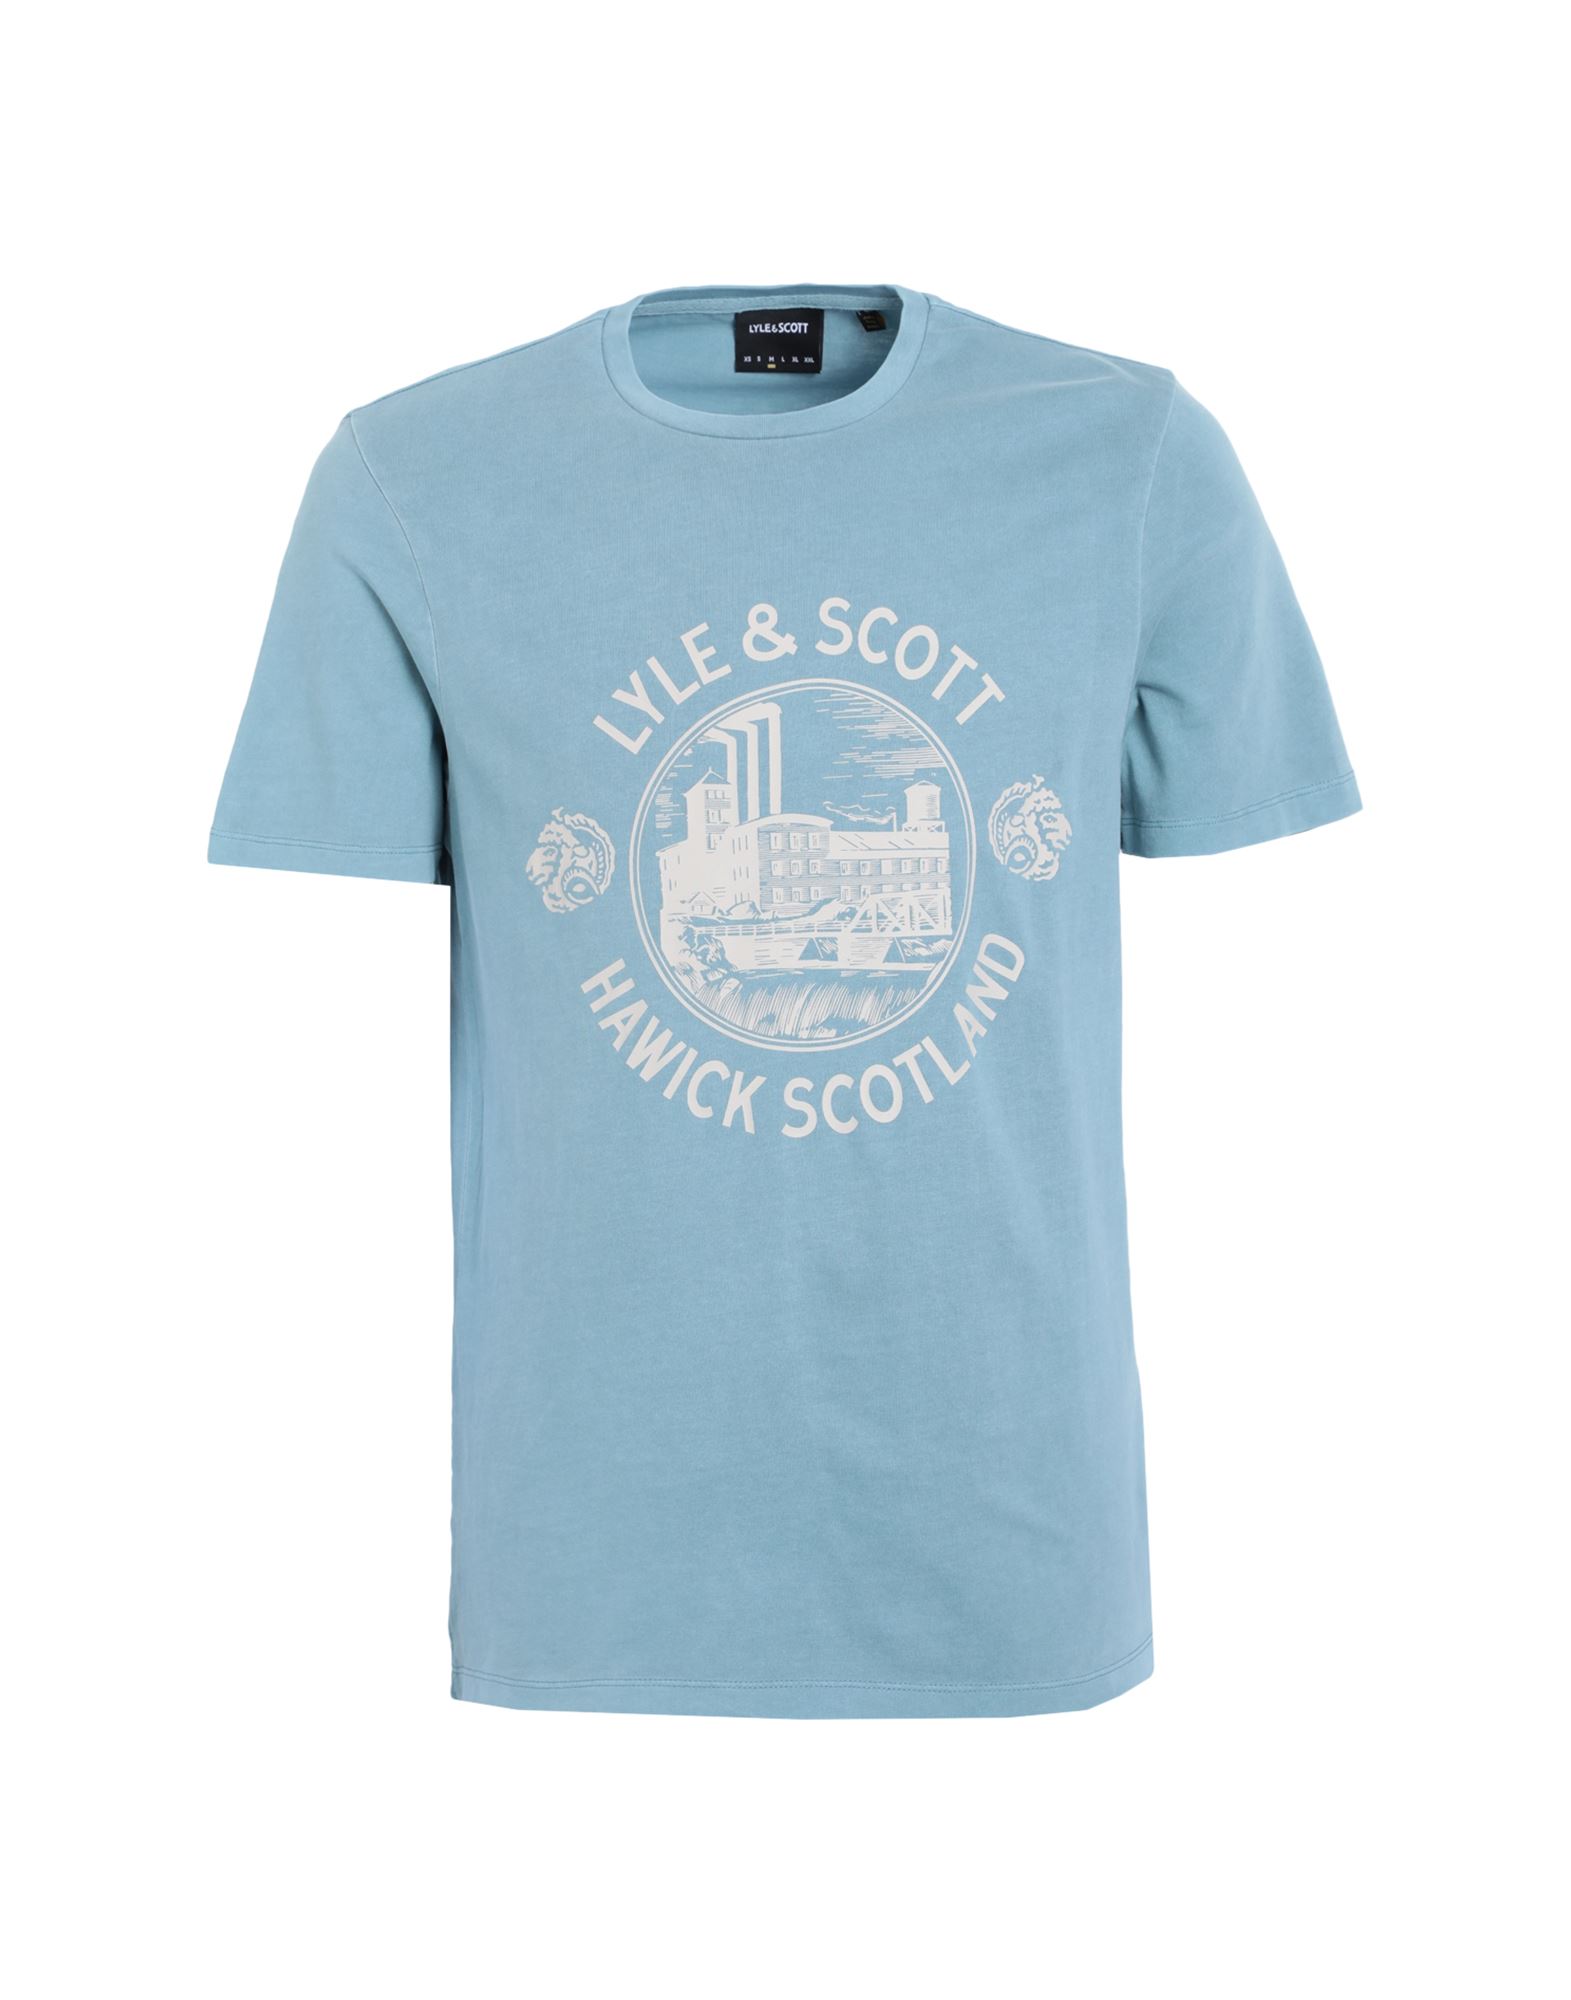 LYLE & SCOTT T-shirts Herren Blaugrau von LYLE & SCOTT